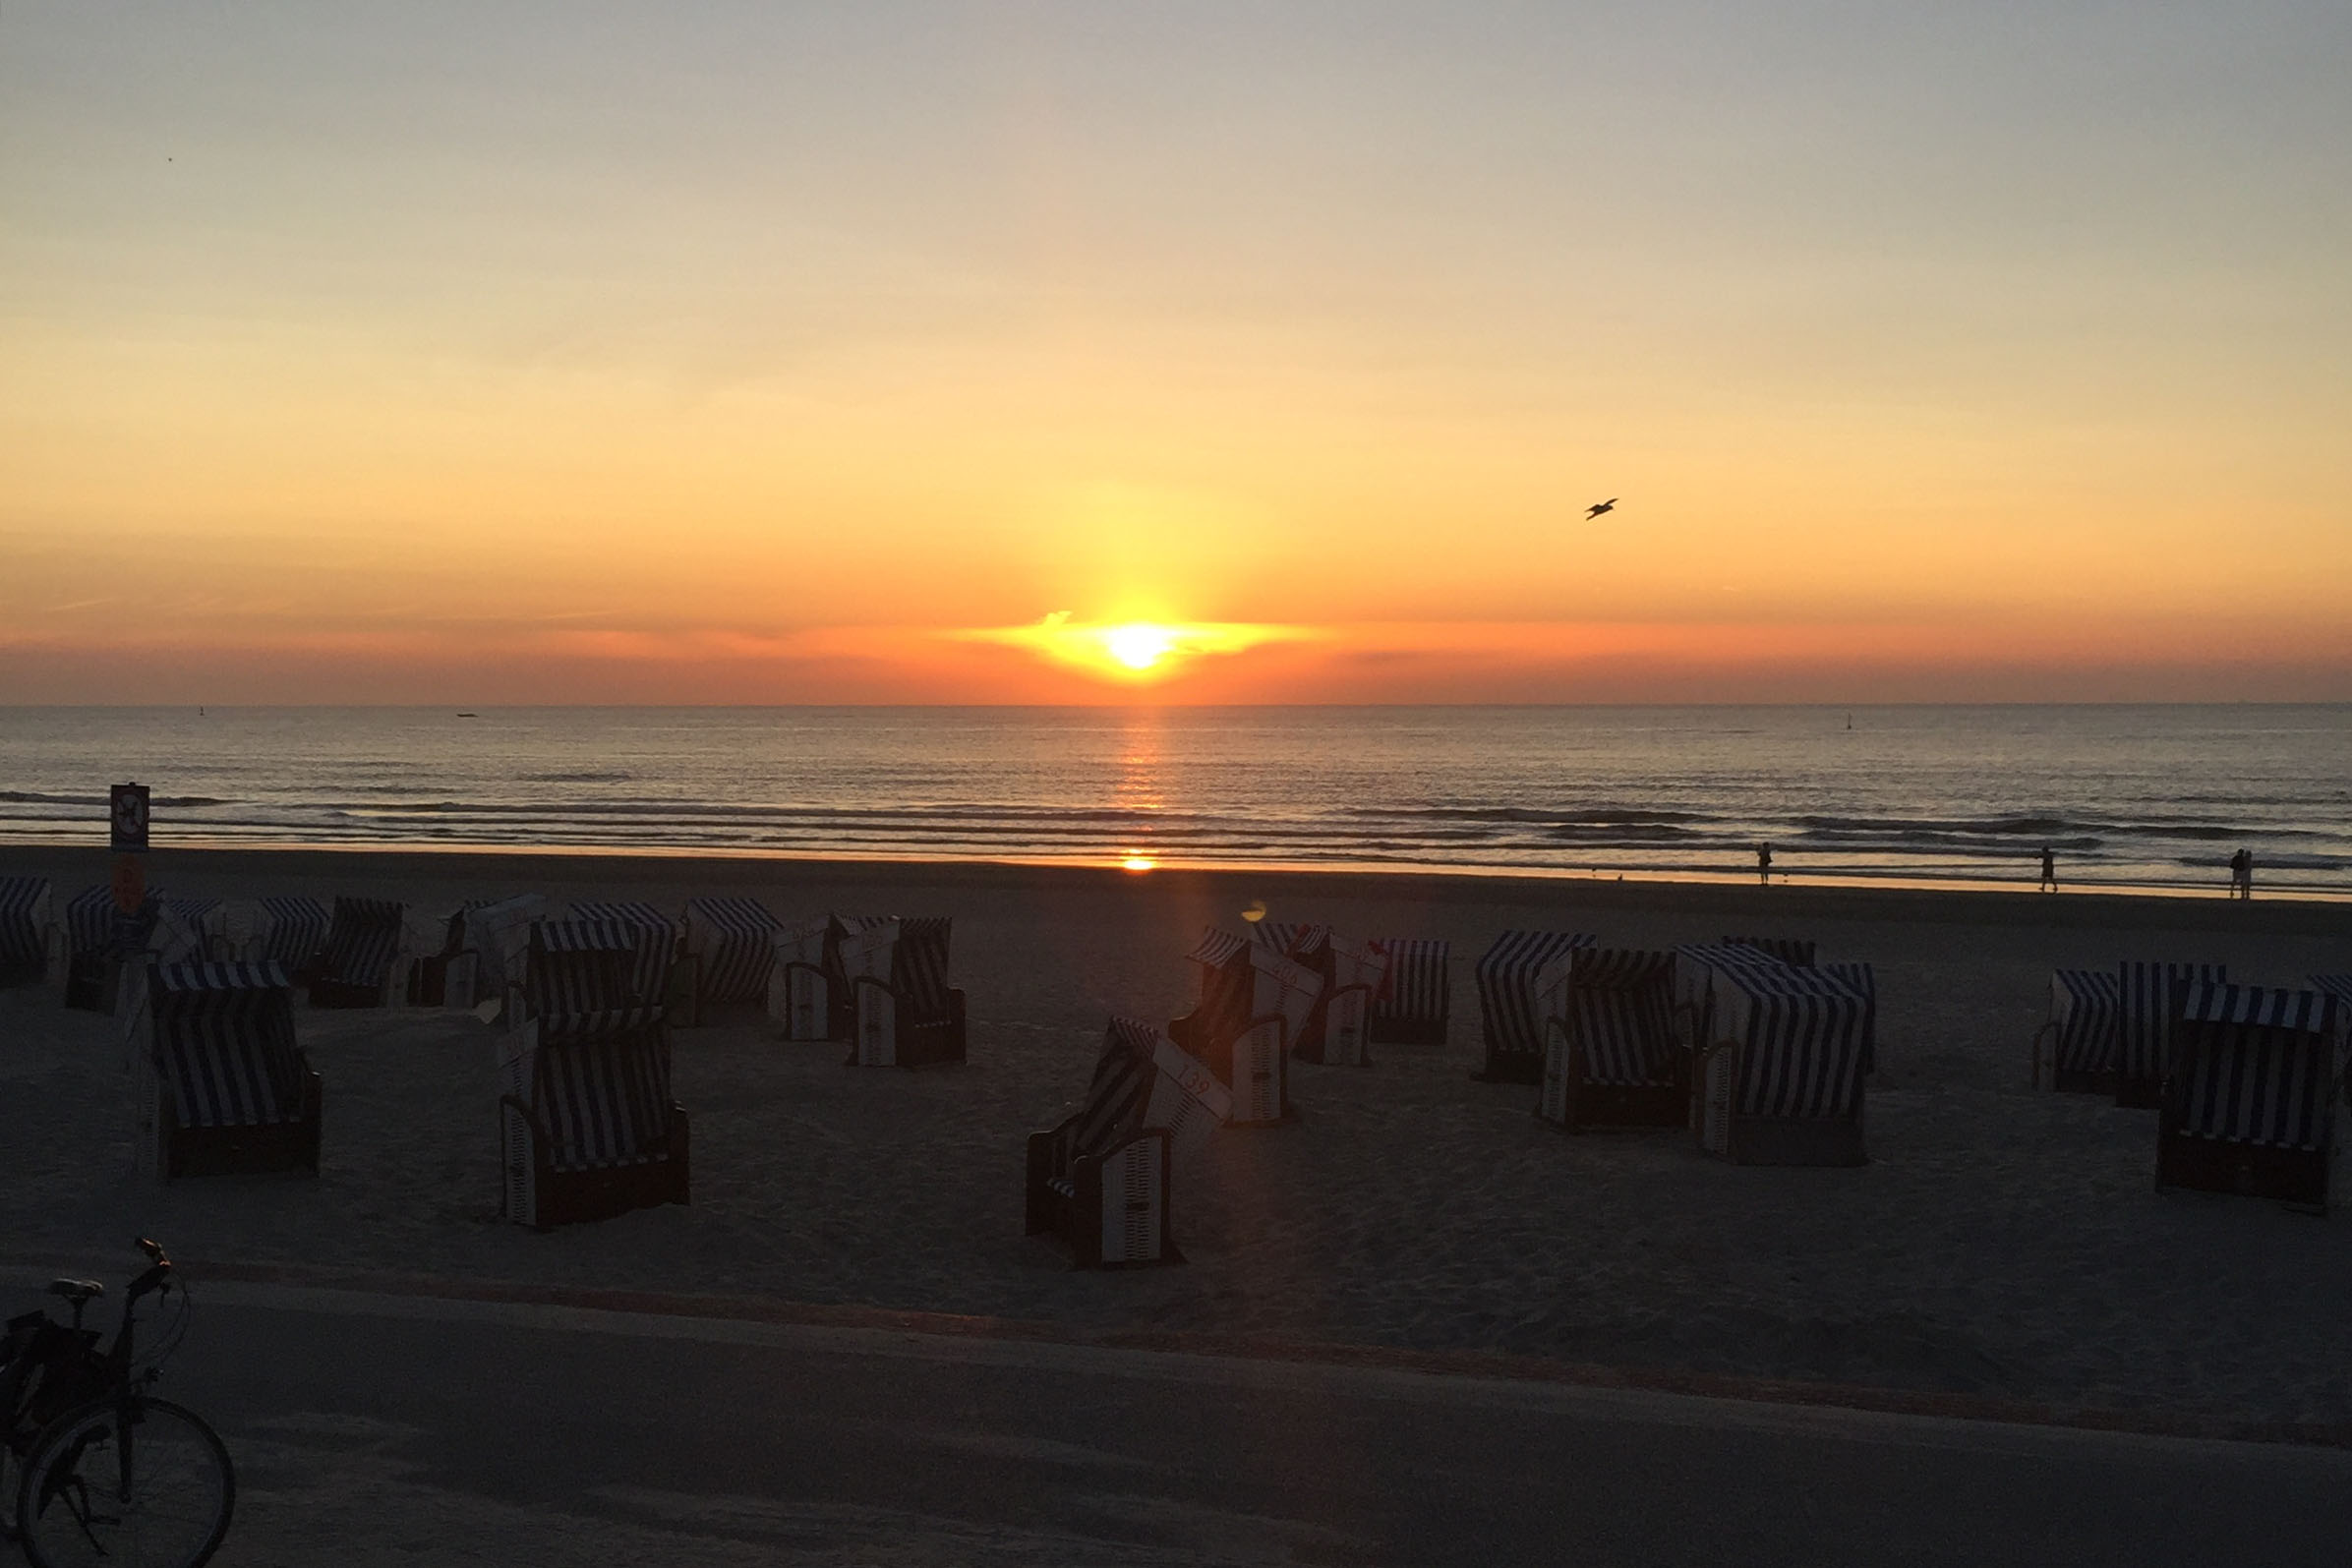 Sonnenuntergang am Strand von Norderney